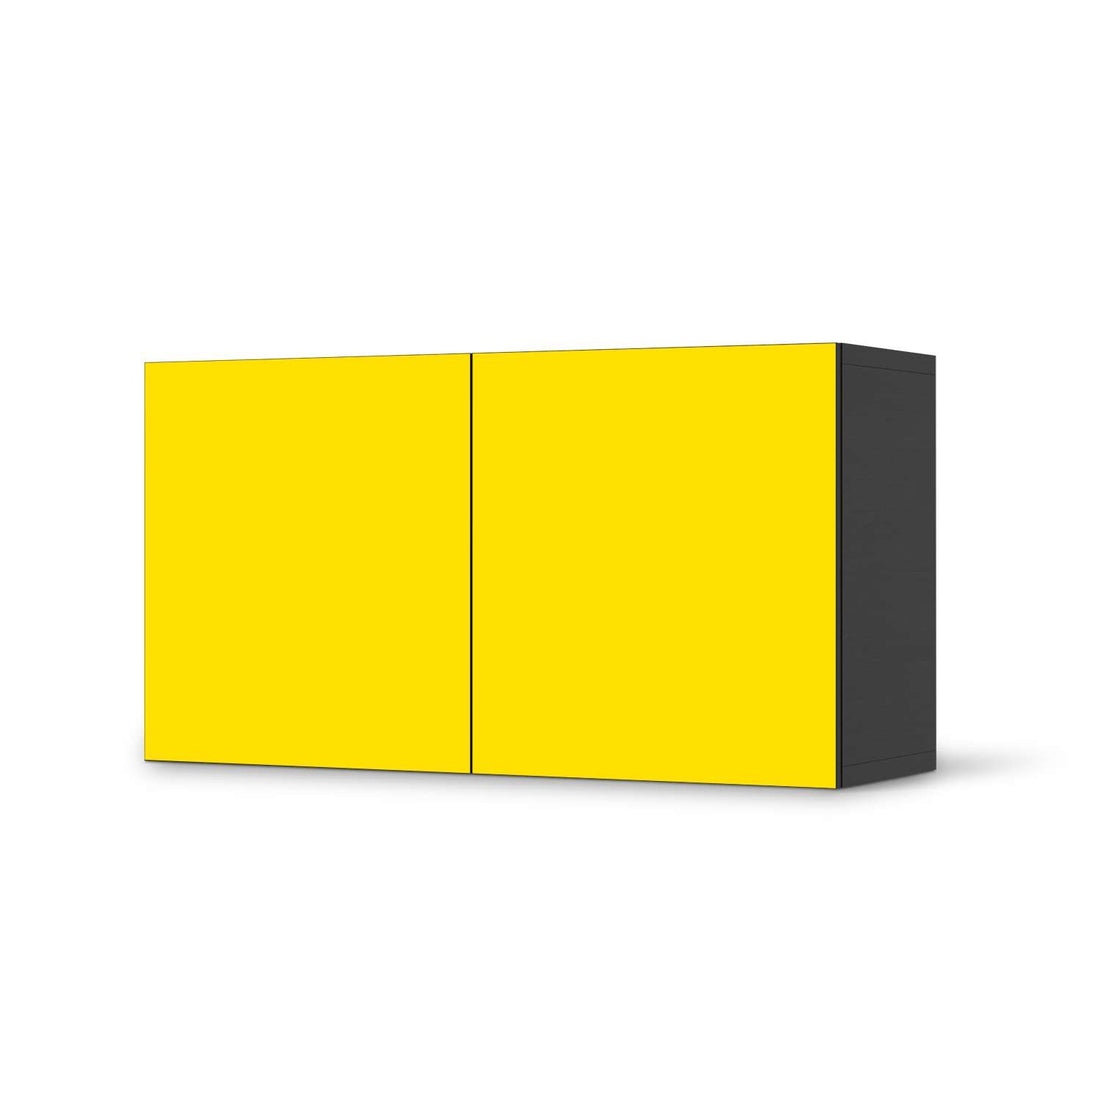 Folie für Möbel Gelb Dark - IKEA Besta Regal Quer 2 Türen - schwarz